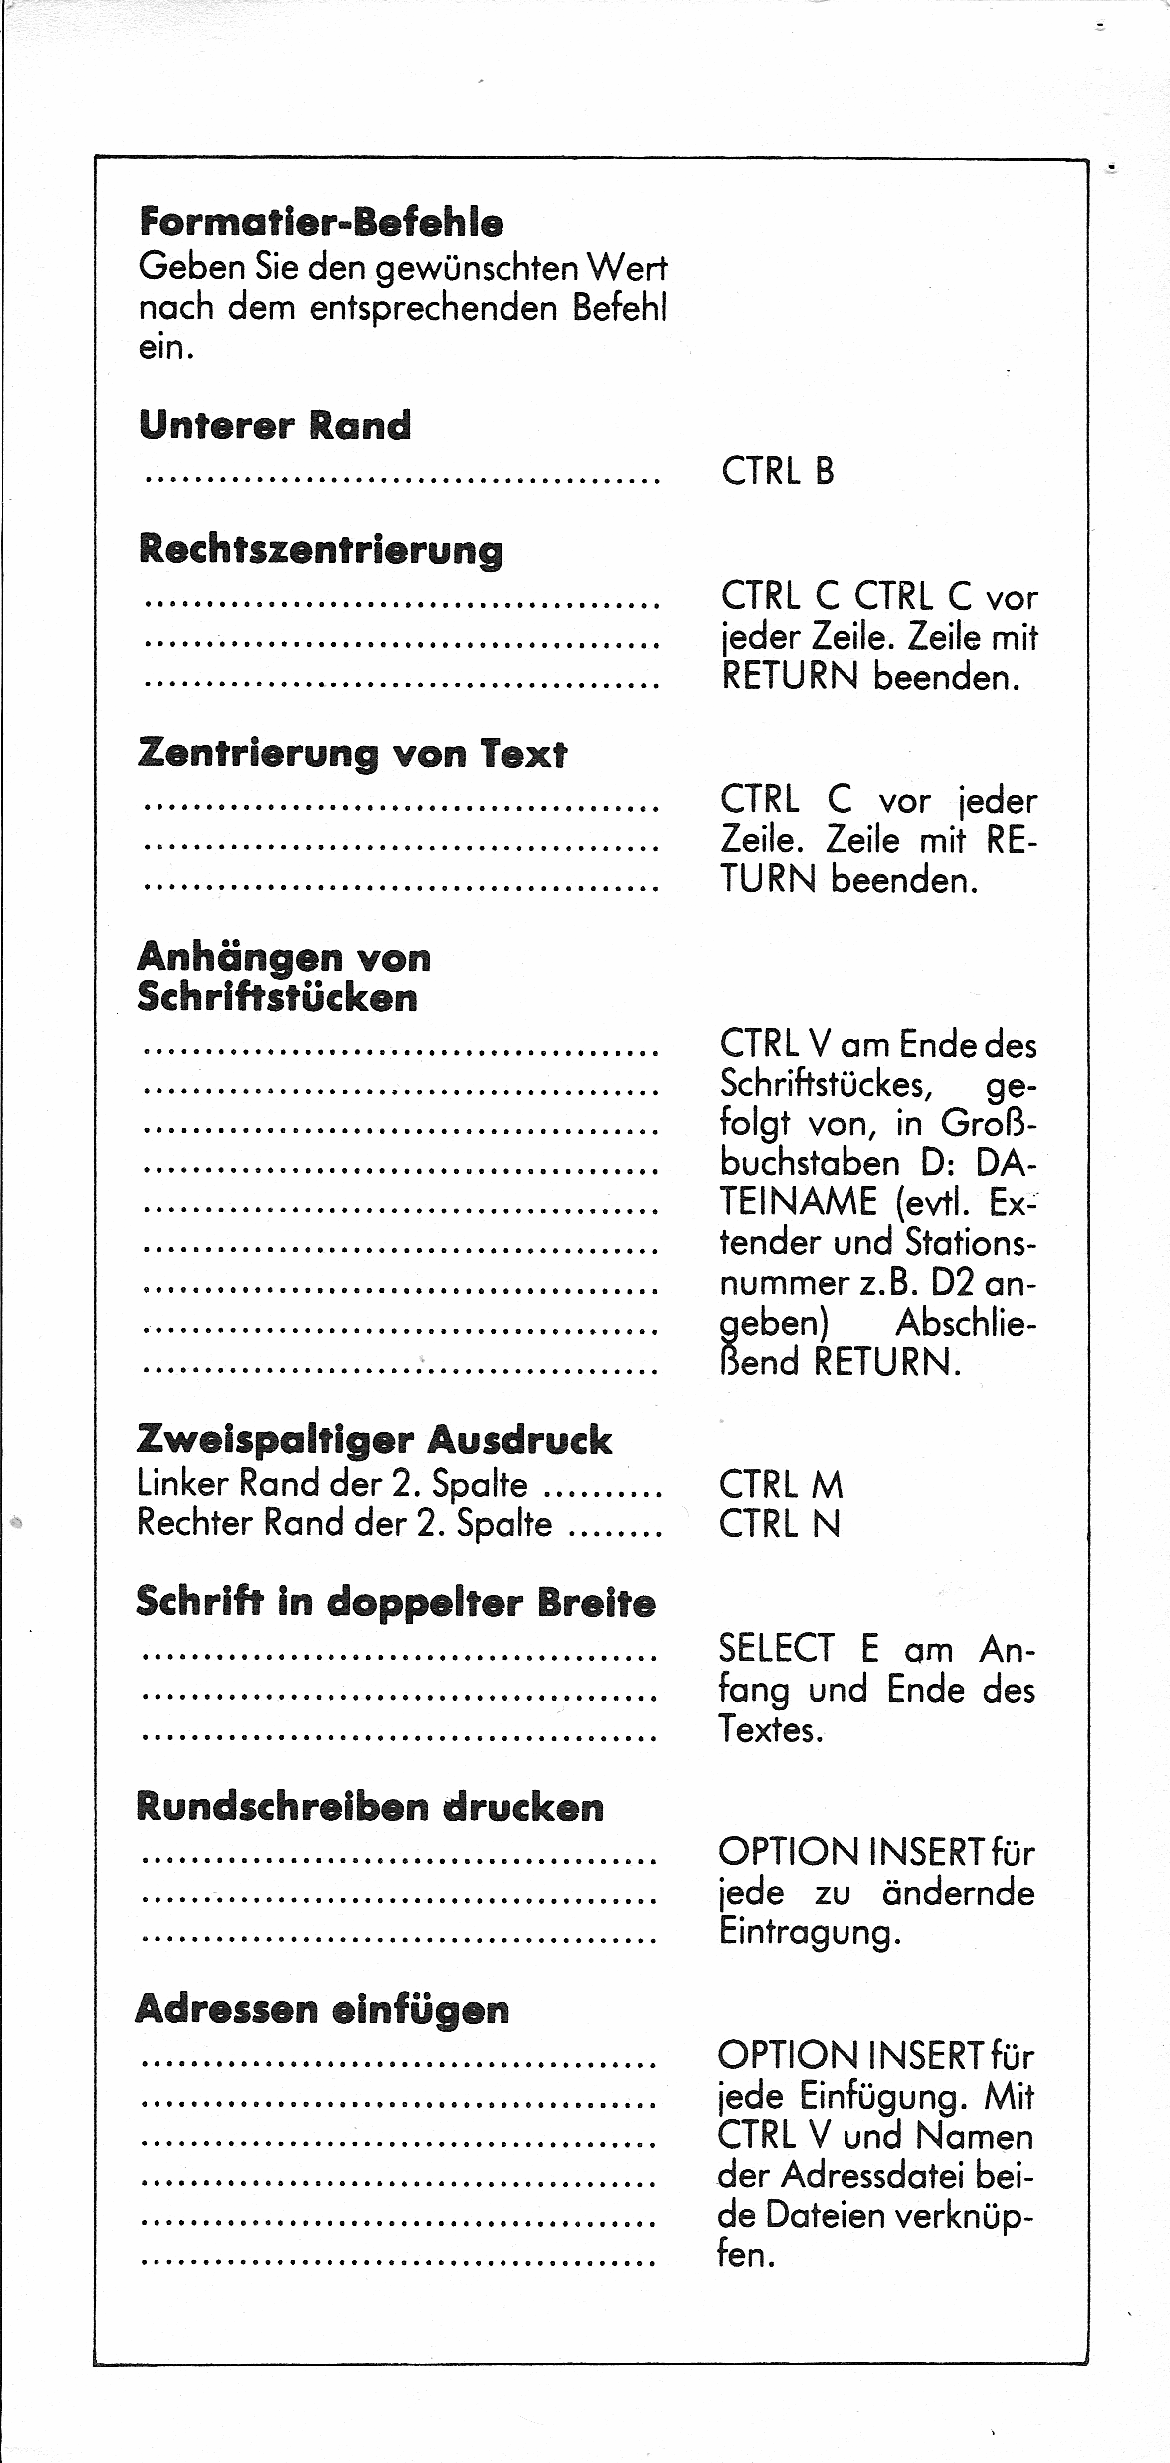 Atari Schreiber/Referenz-Karten_004.png